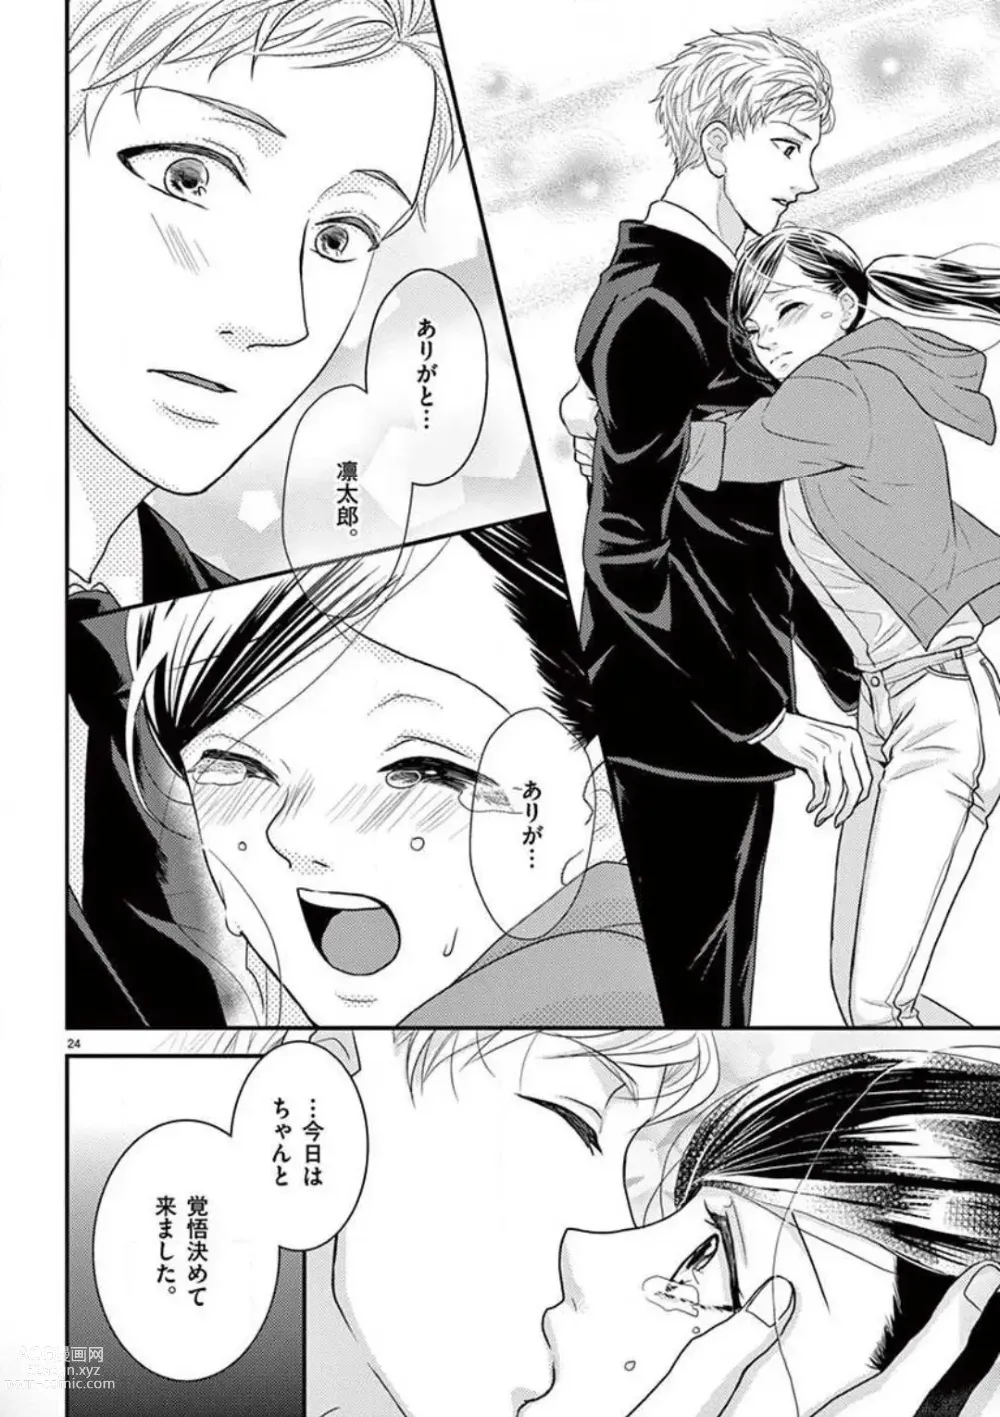 Page 24 of manga Yajū Suitchi ON!〜 Junjō Wanko wa Hageshi Sugi 〜